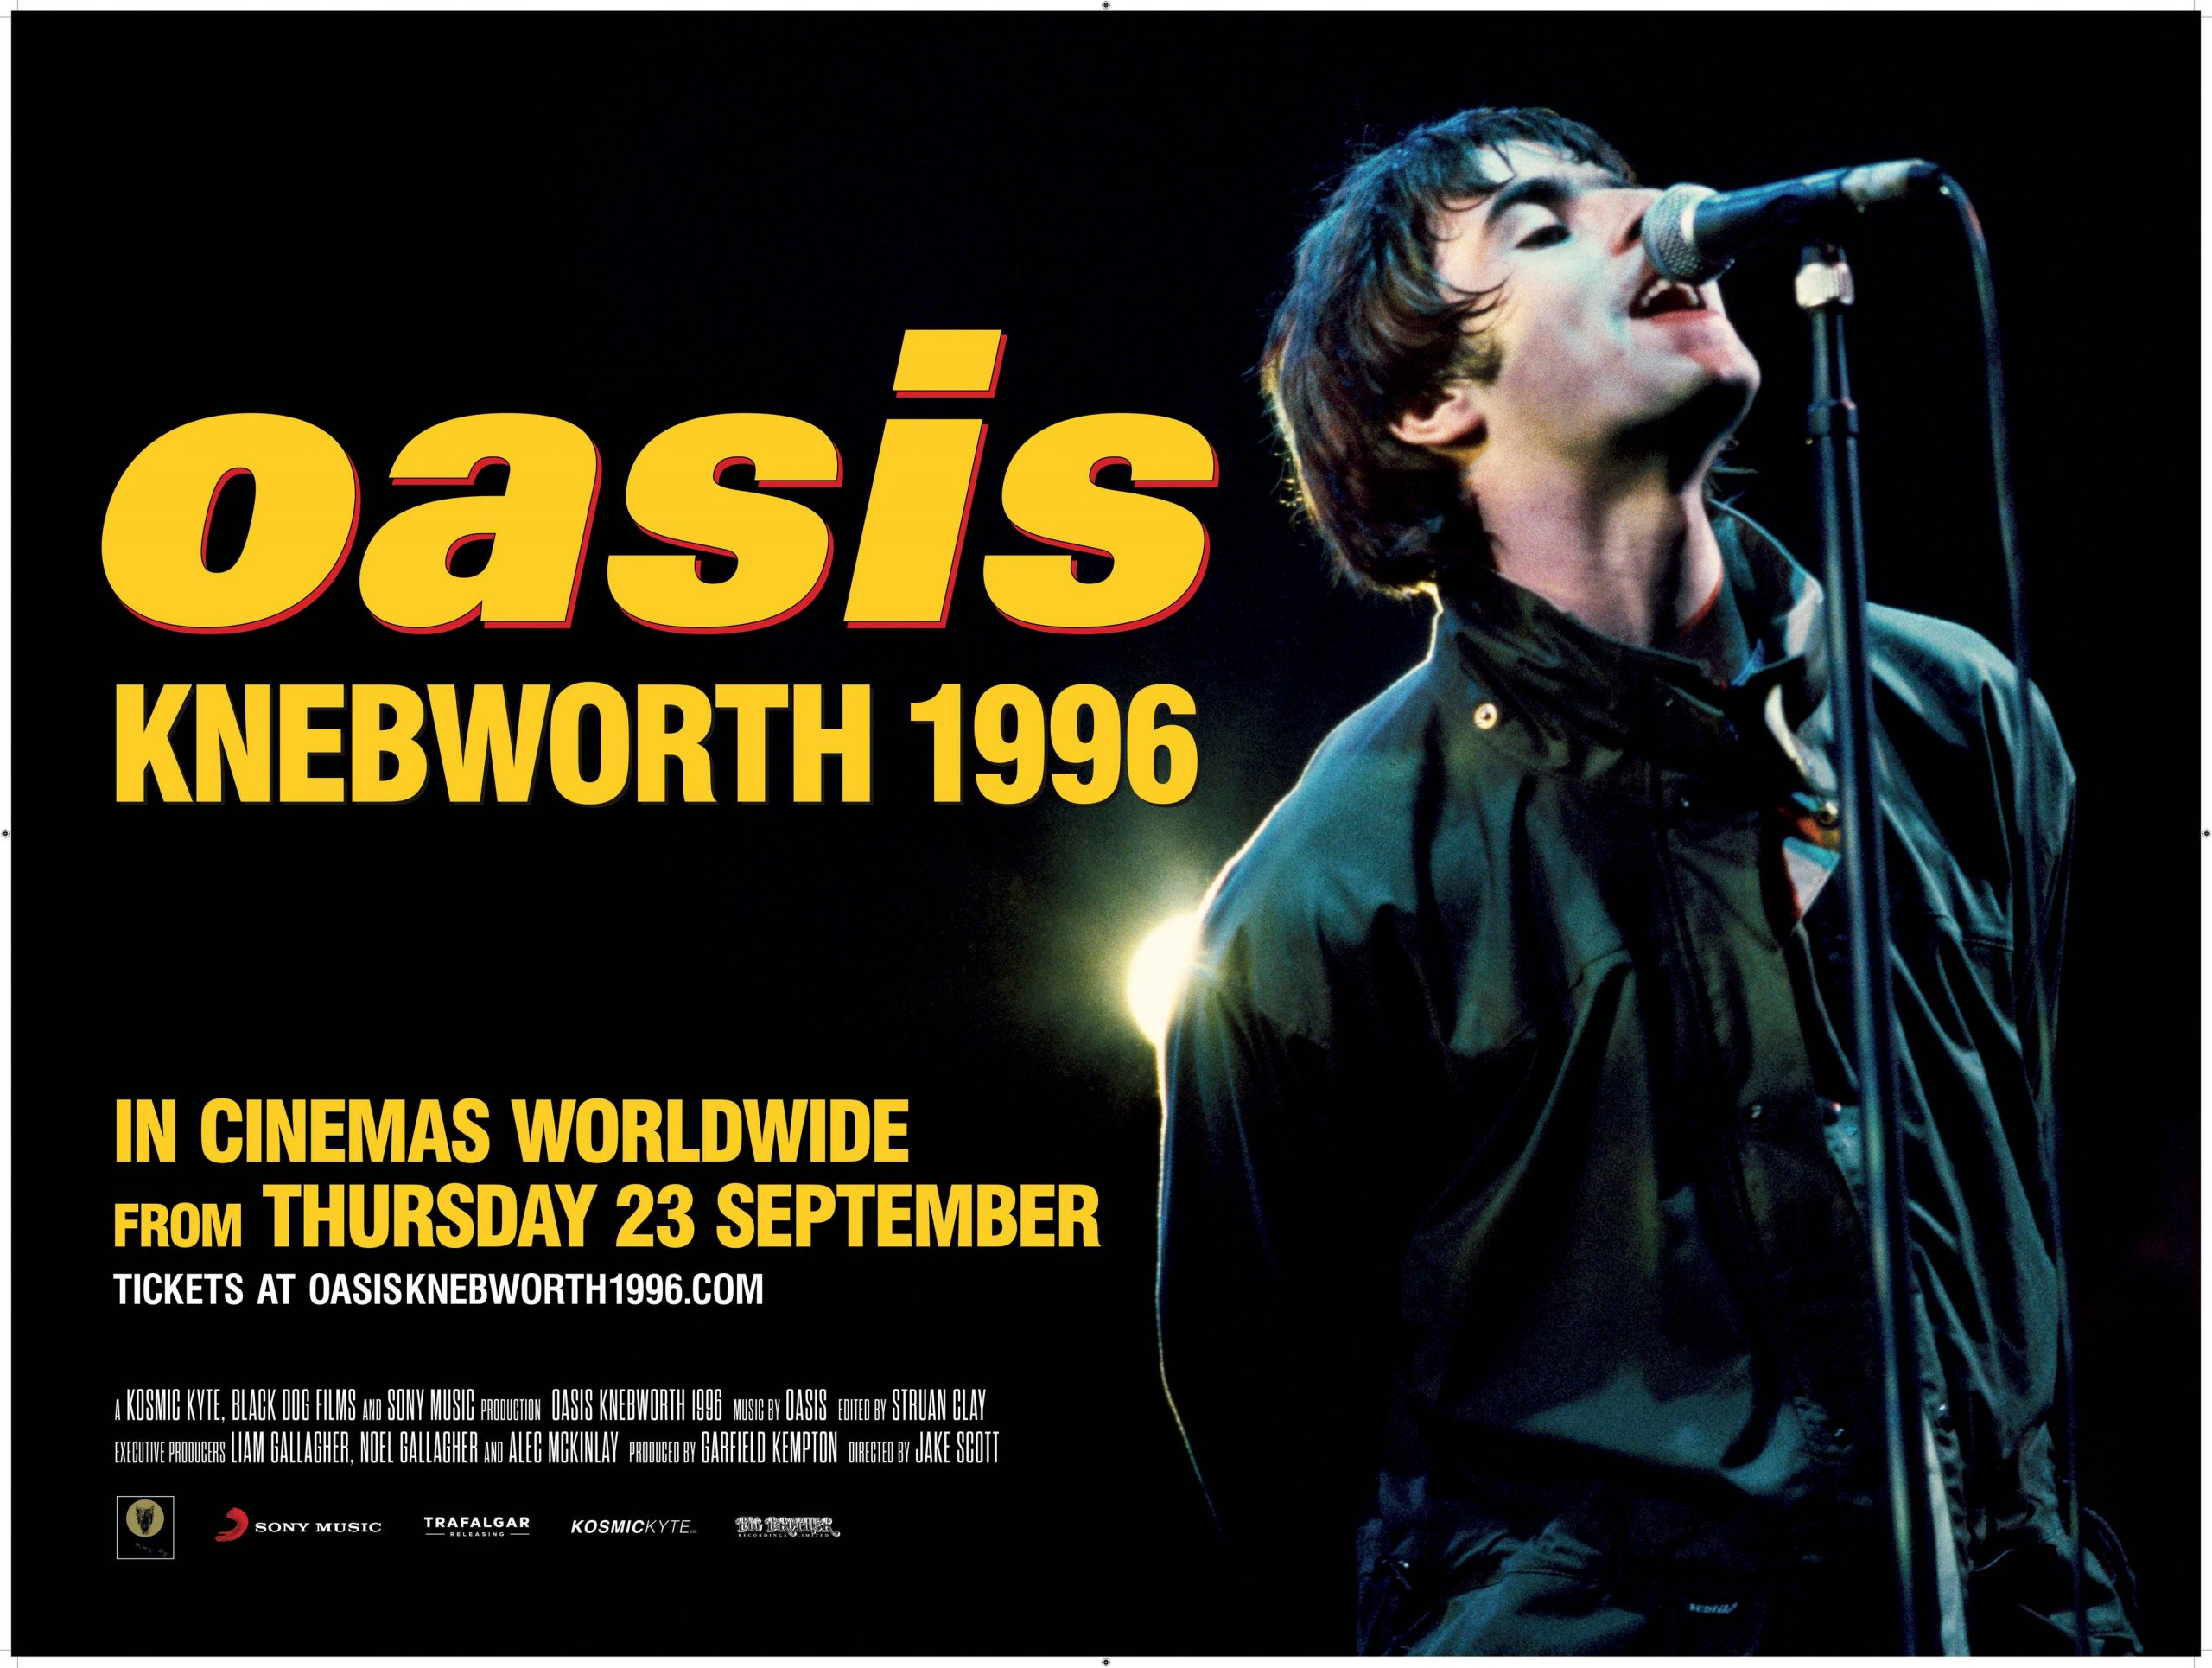 ¡El documental de los shows de Oasis en Knebworth llegará a México!